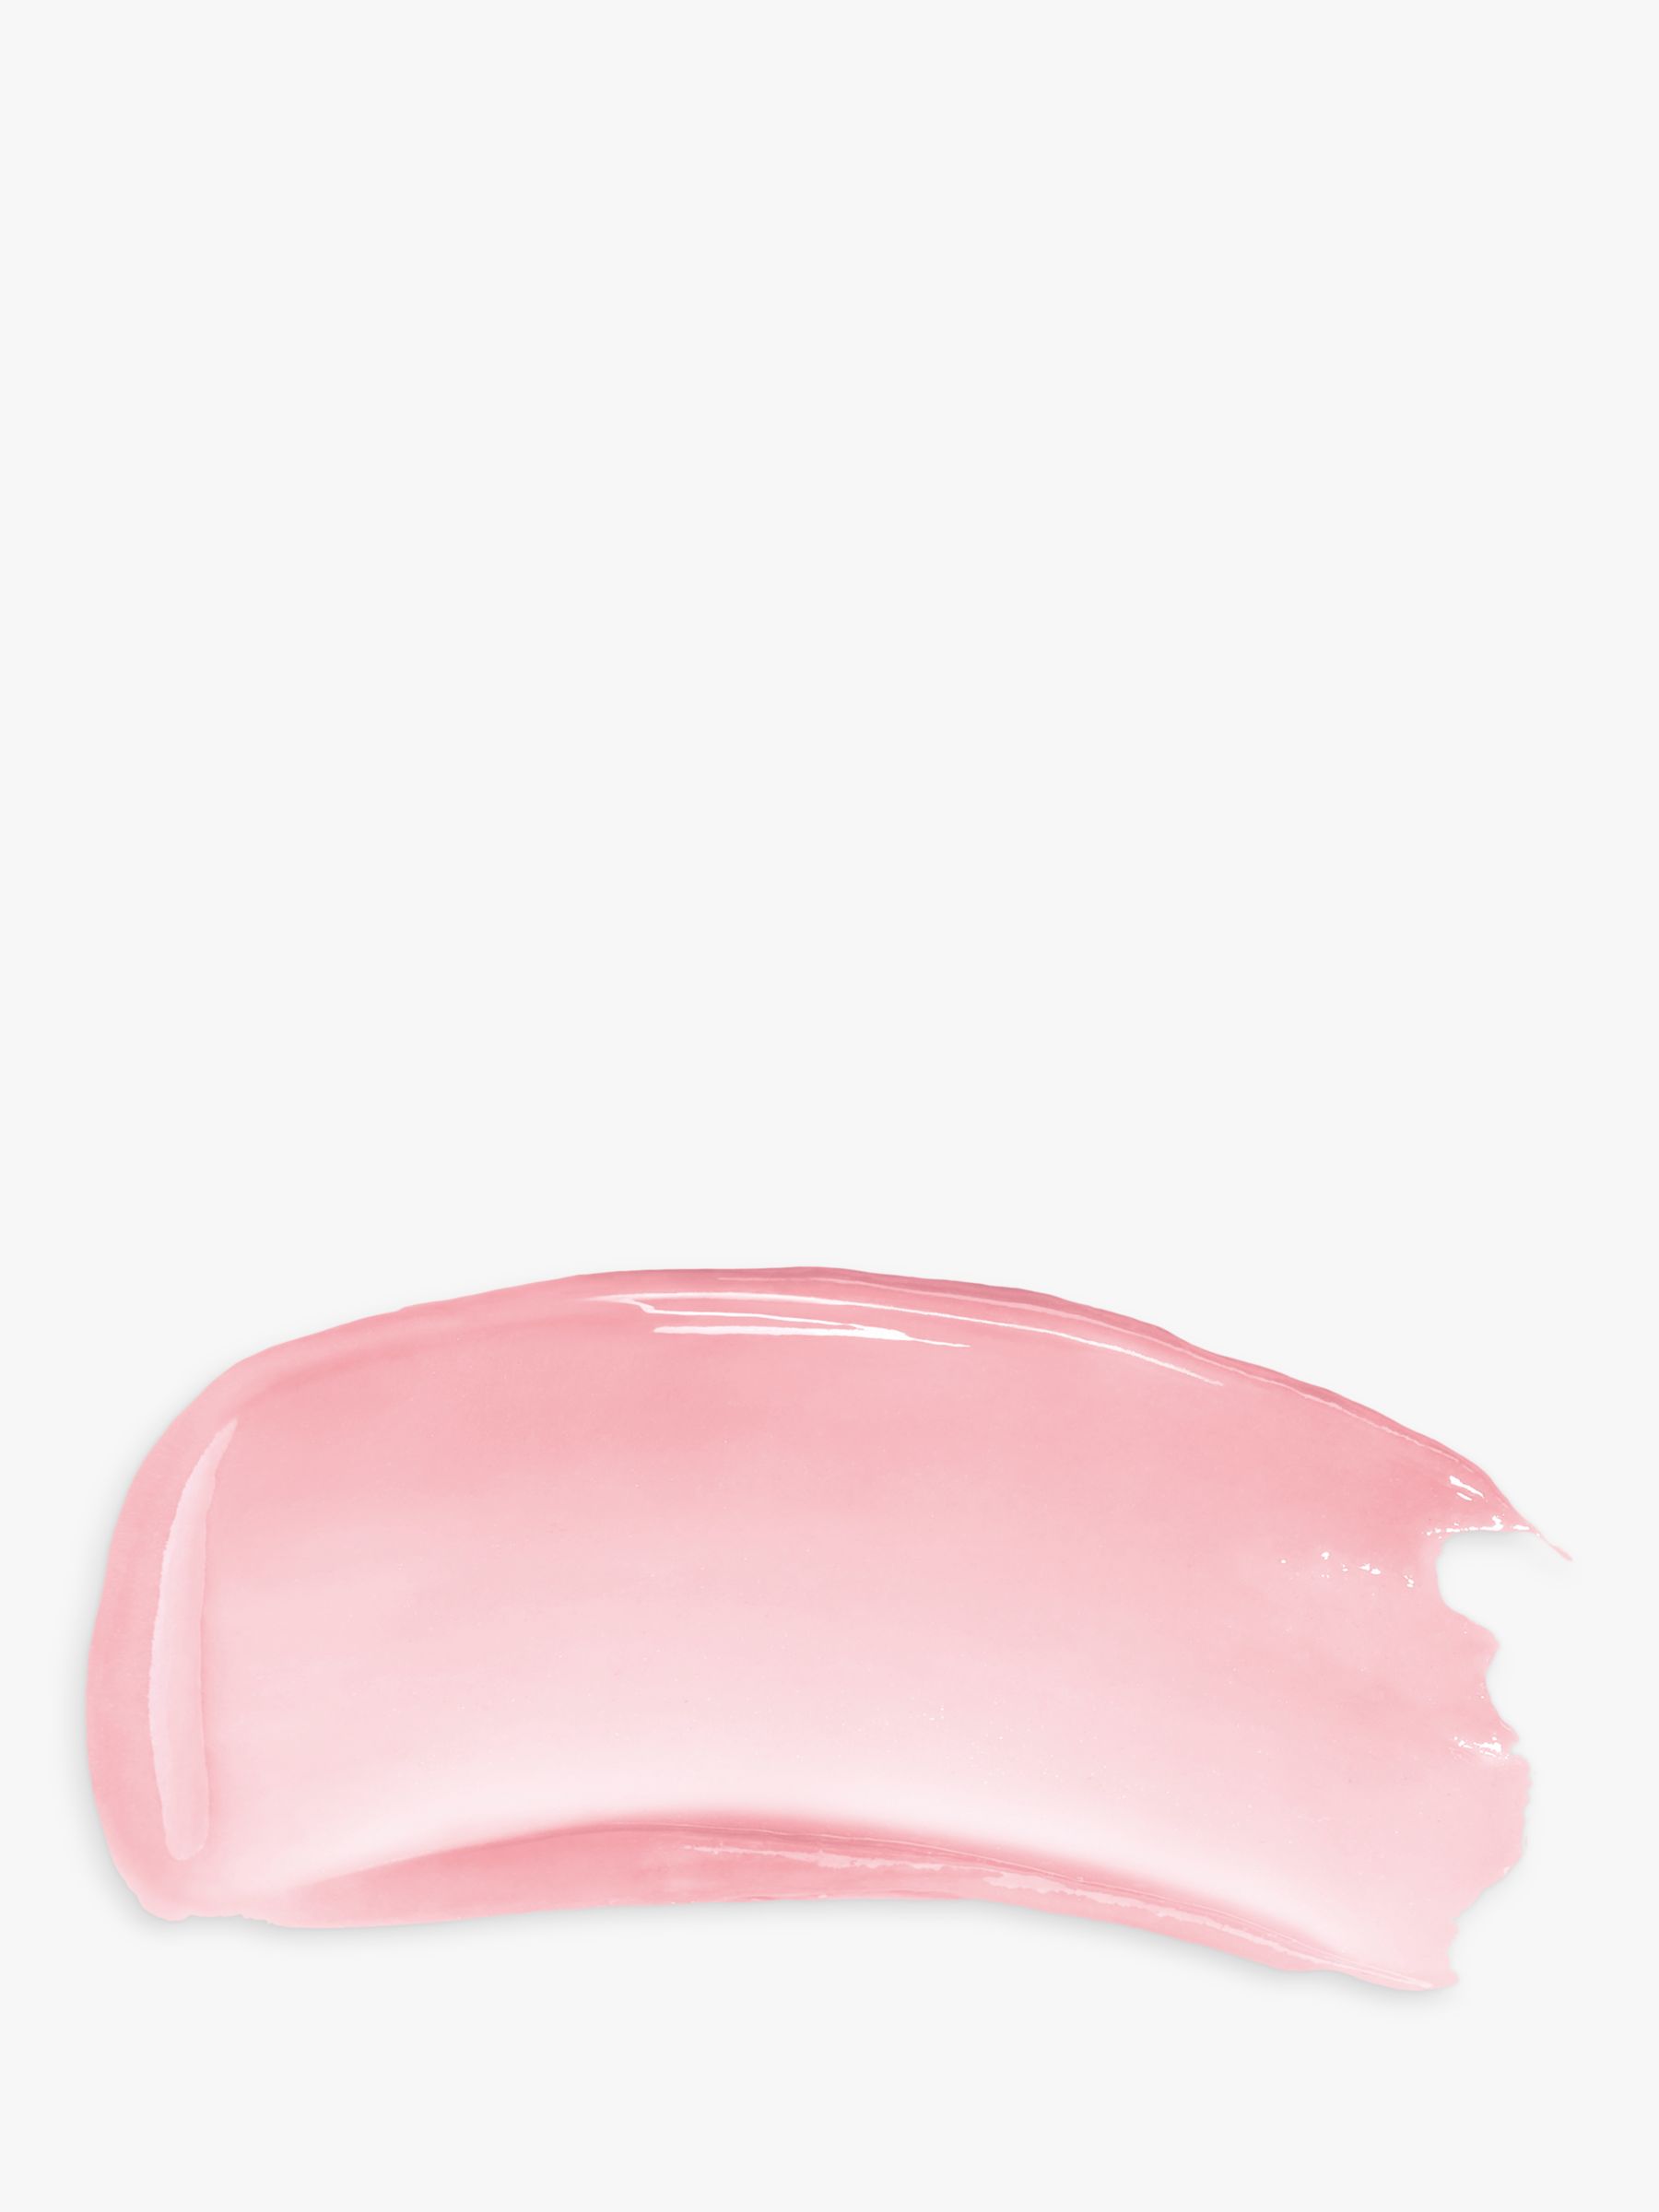 Givenchy Rose Perfecto Liquid Lip Balm, Pink Irresistible 3